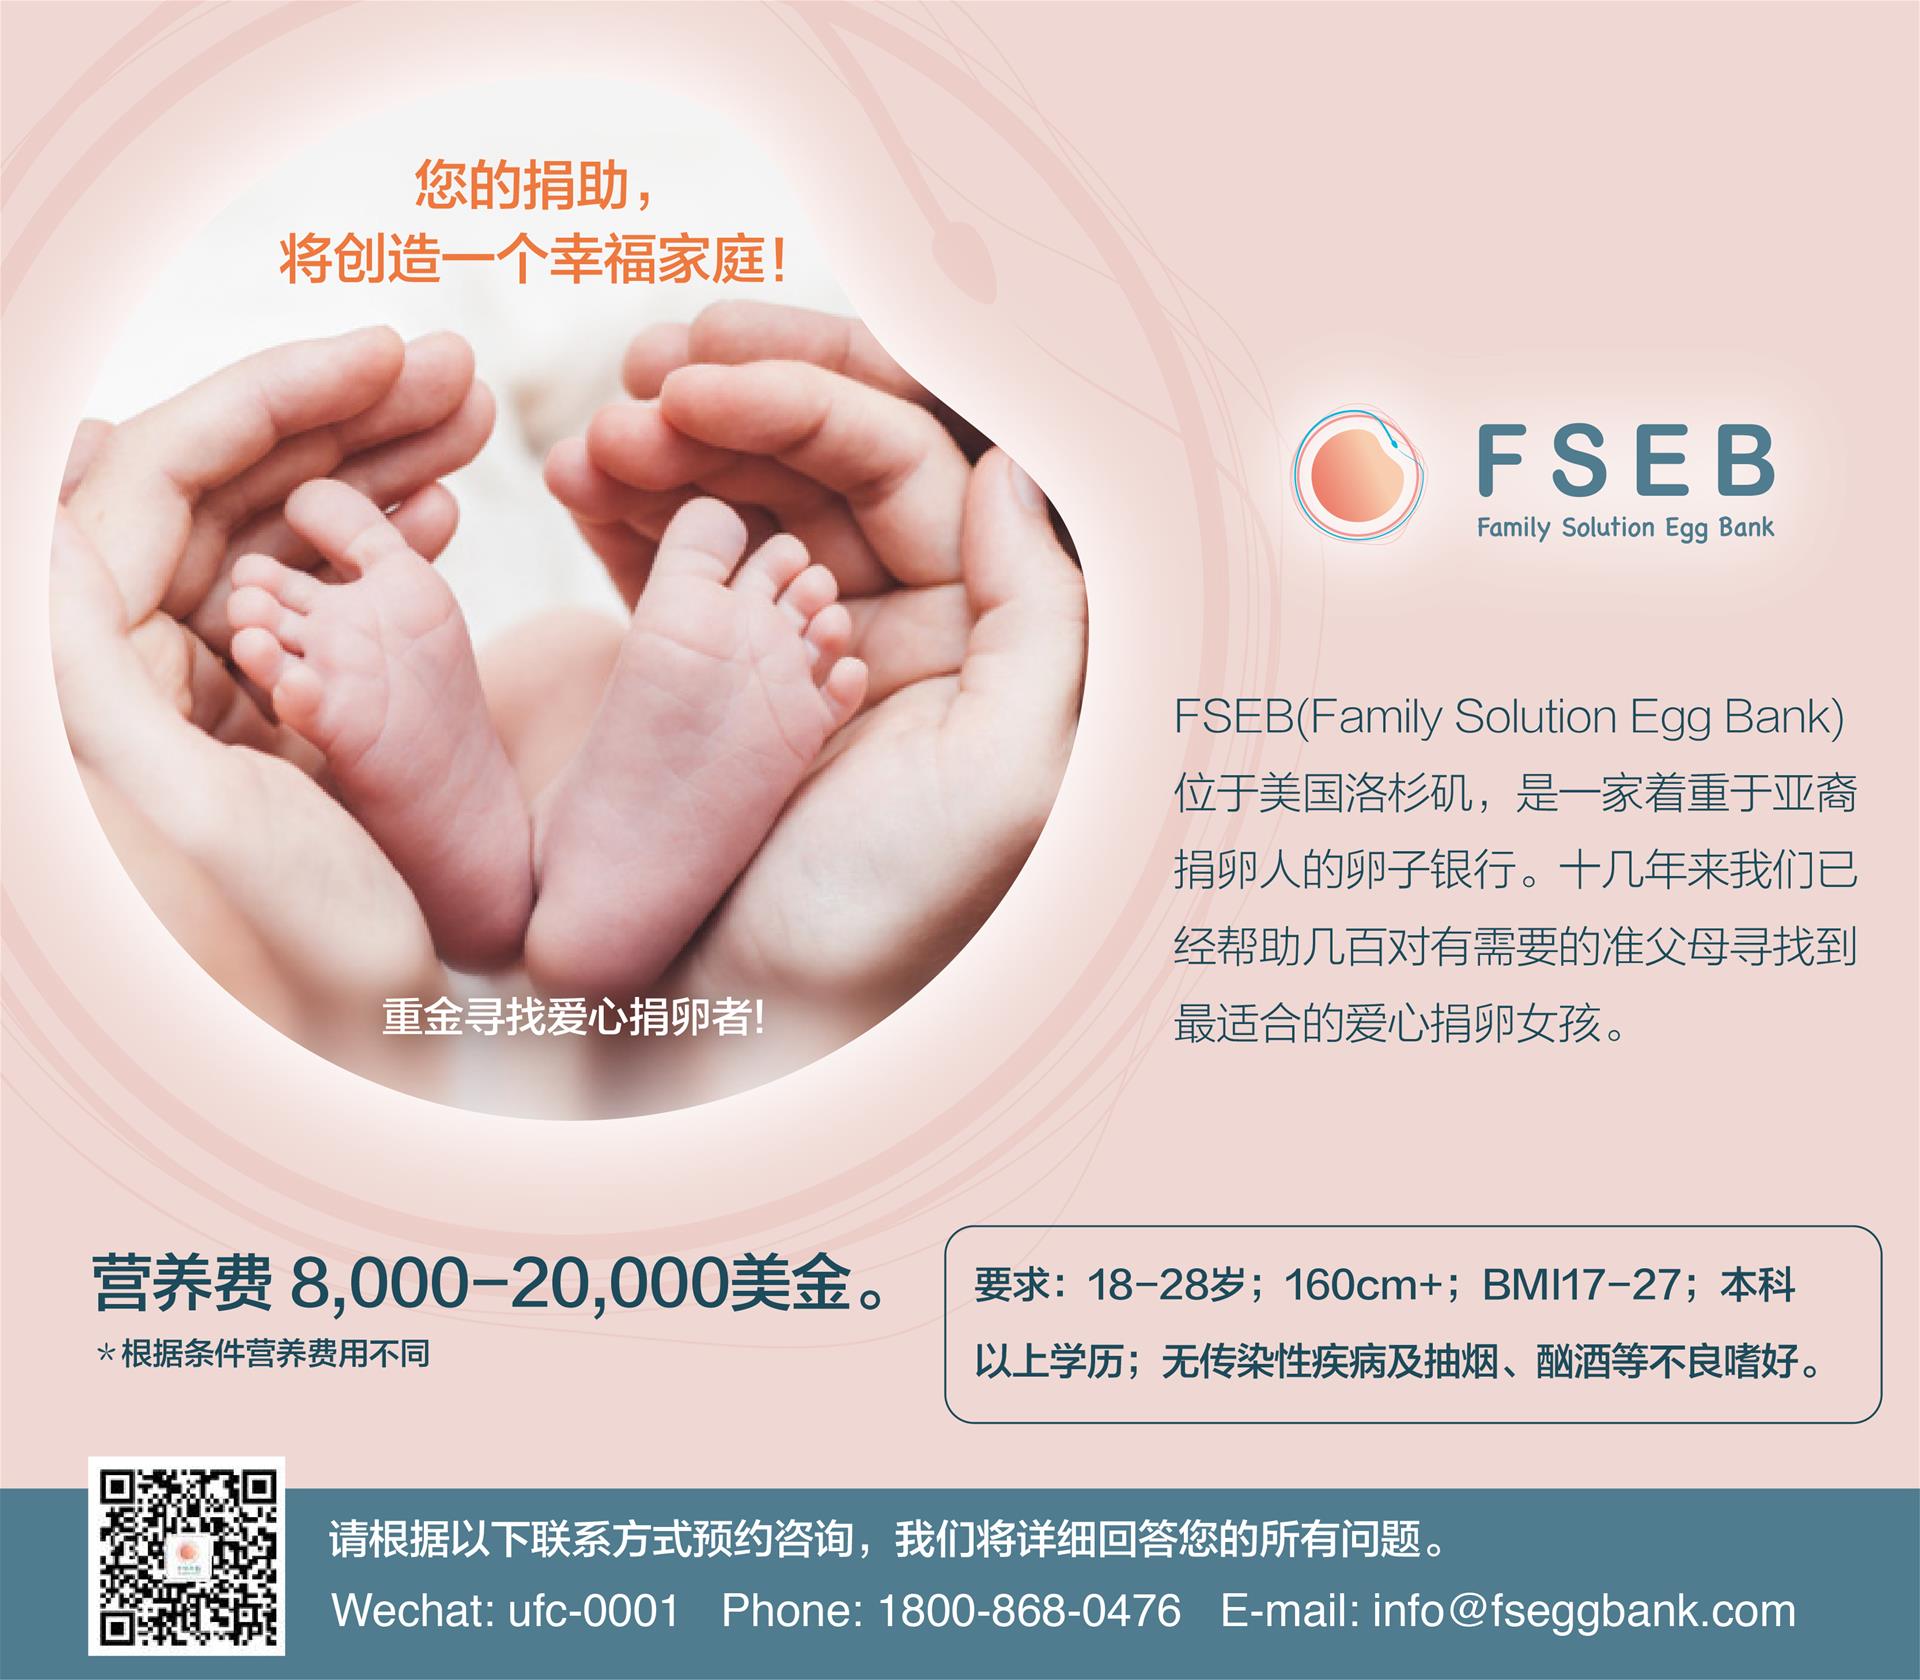 招募捐卵人，报酬$8,000-$20,000